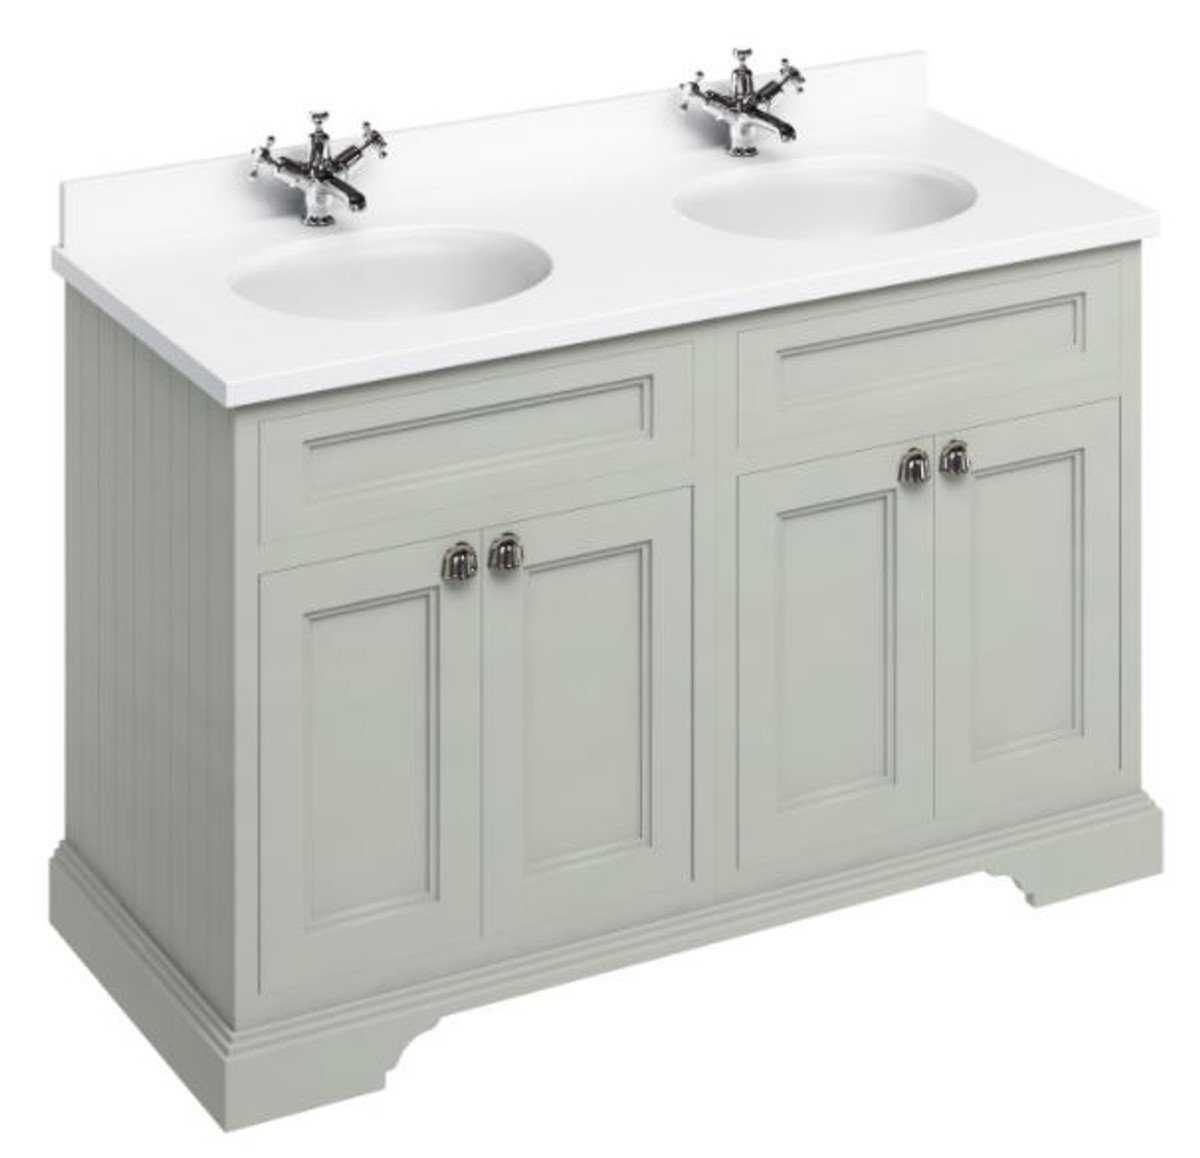 Casa Padrino Doppelwaschtisch Doppel Waschschrank / Waschtisch mit Marmorplatte und 4 Türen 130 x 55 x H. 93 cm von Casa Padrino